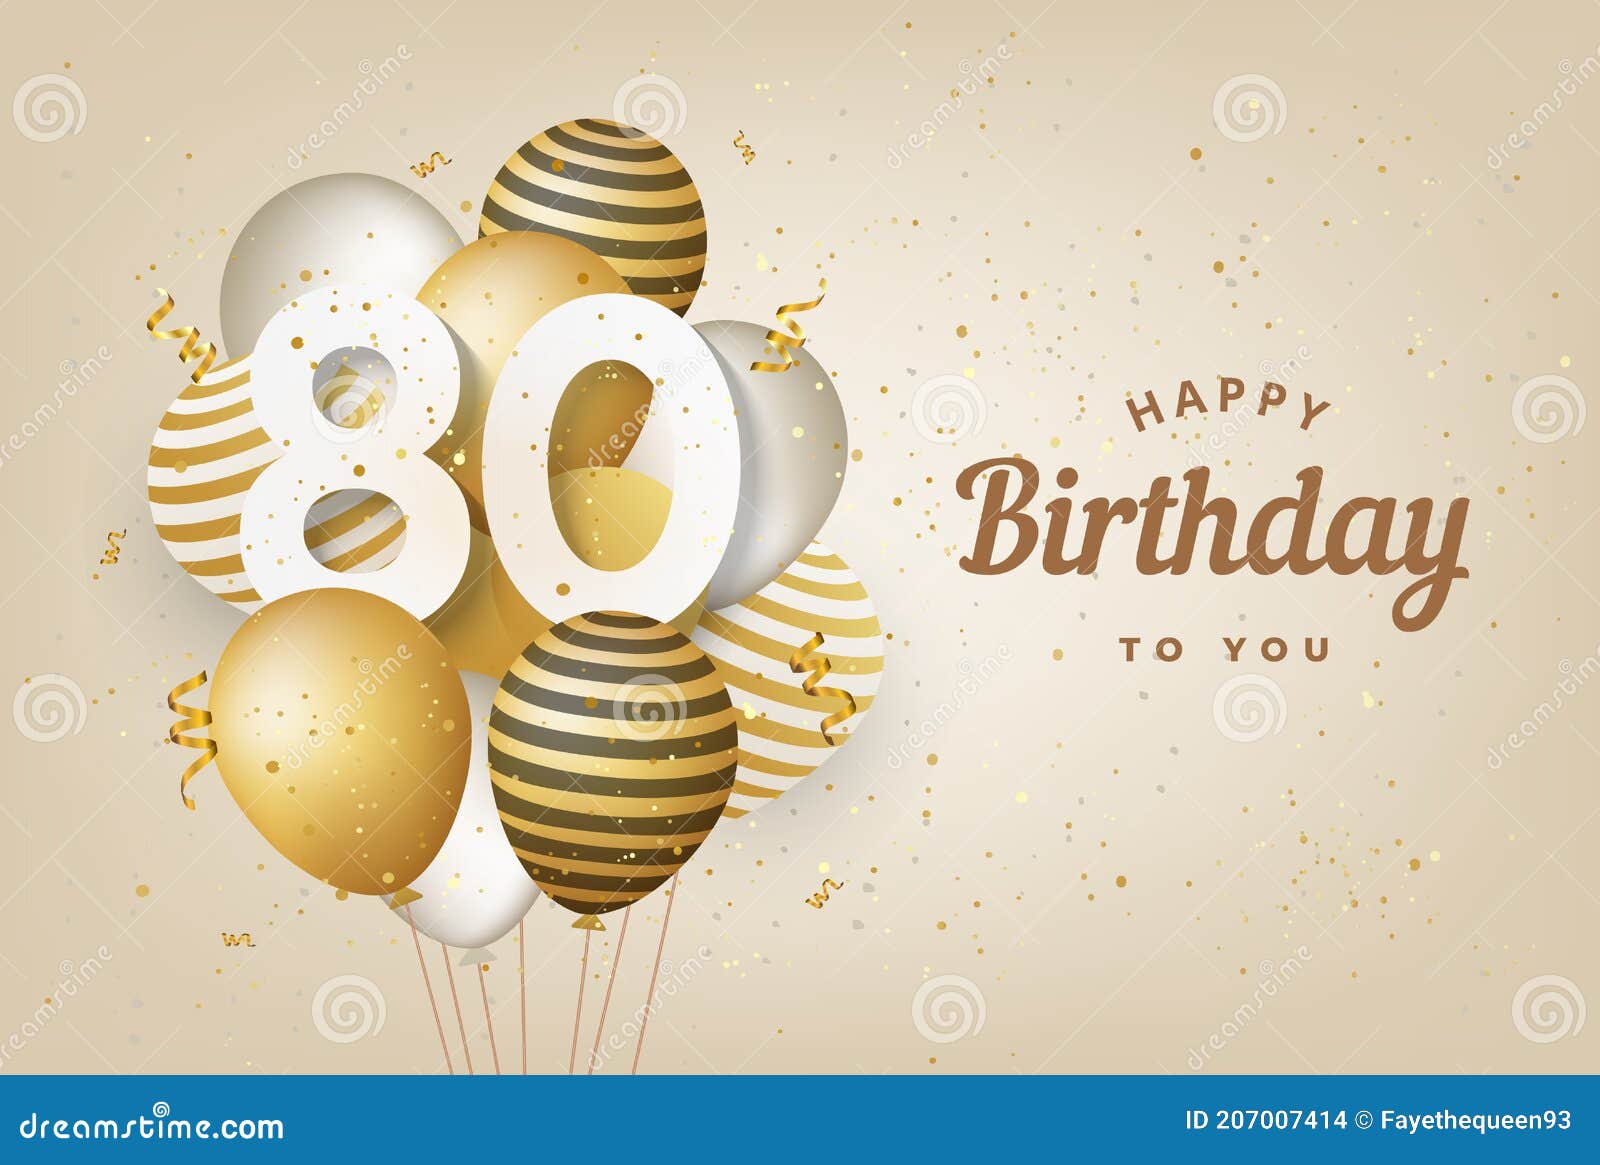 Sinh nhật 80 tuổi với bóng bay vàng - Hãy chào đón người thân của bạn với một tiệc sinh nhật đầy màu sắc, phấn khích với bóng bay vàng lung linh. Mọi người sẽ bị cuốn hút bởi sự ấm áp và niềm vui nhân ngày đặc biệt này.